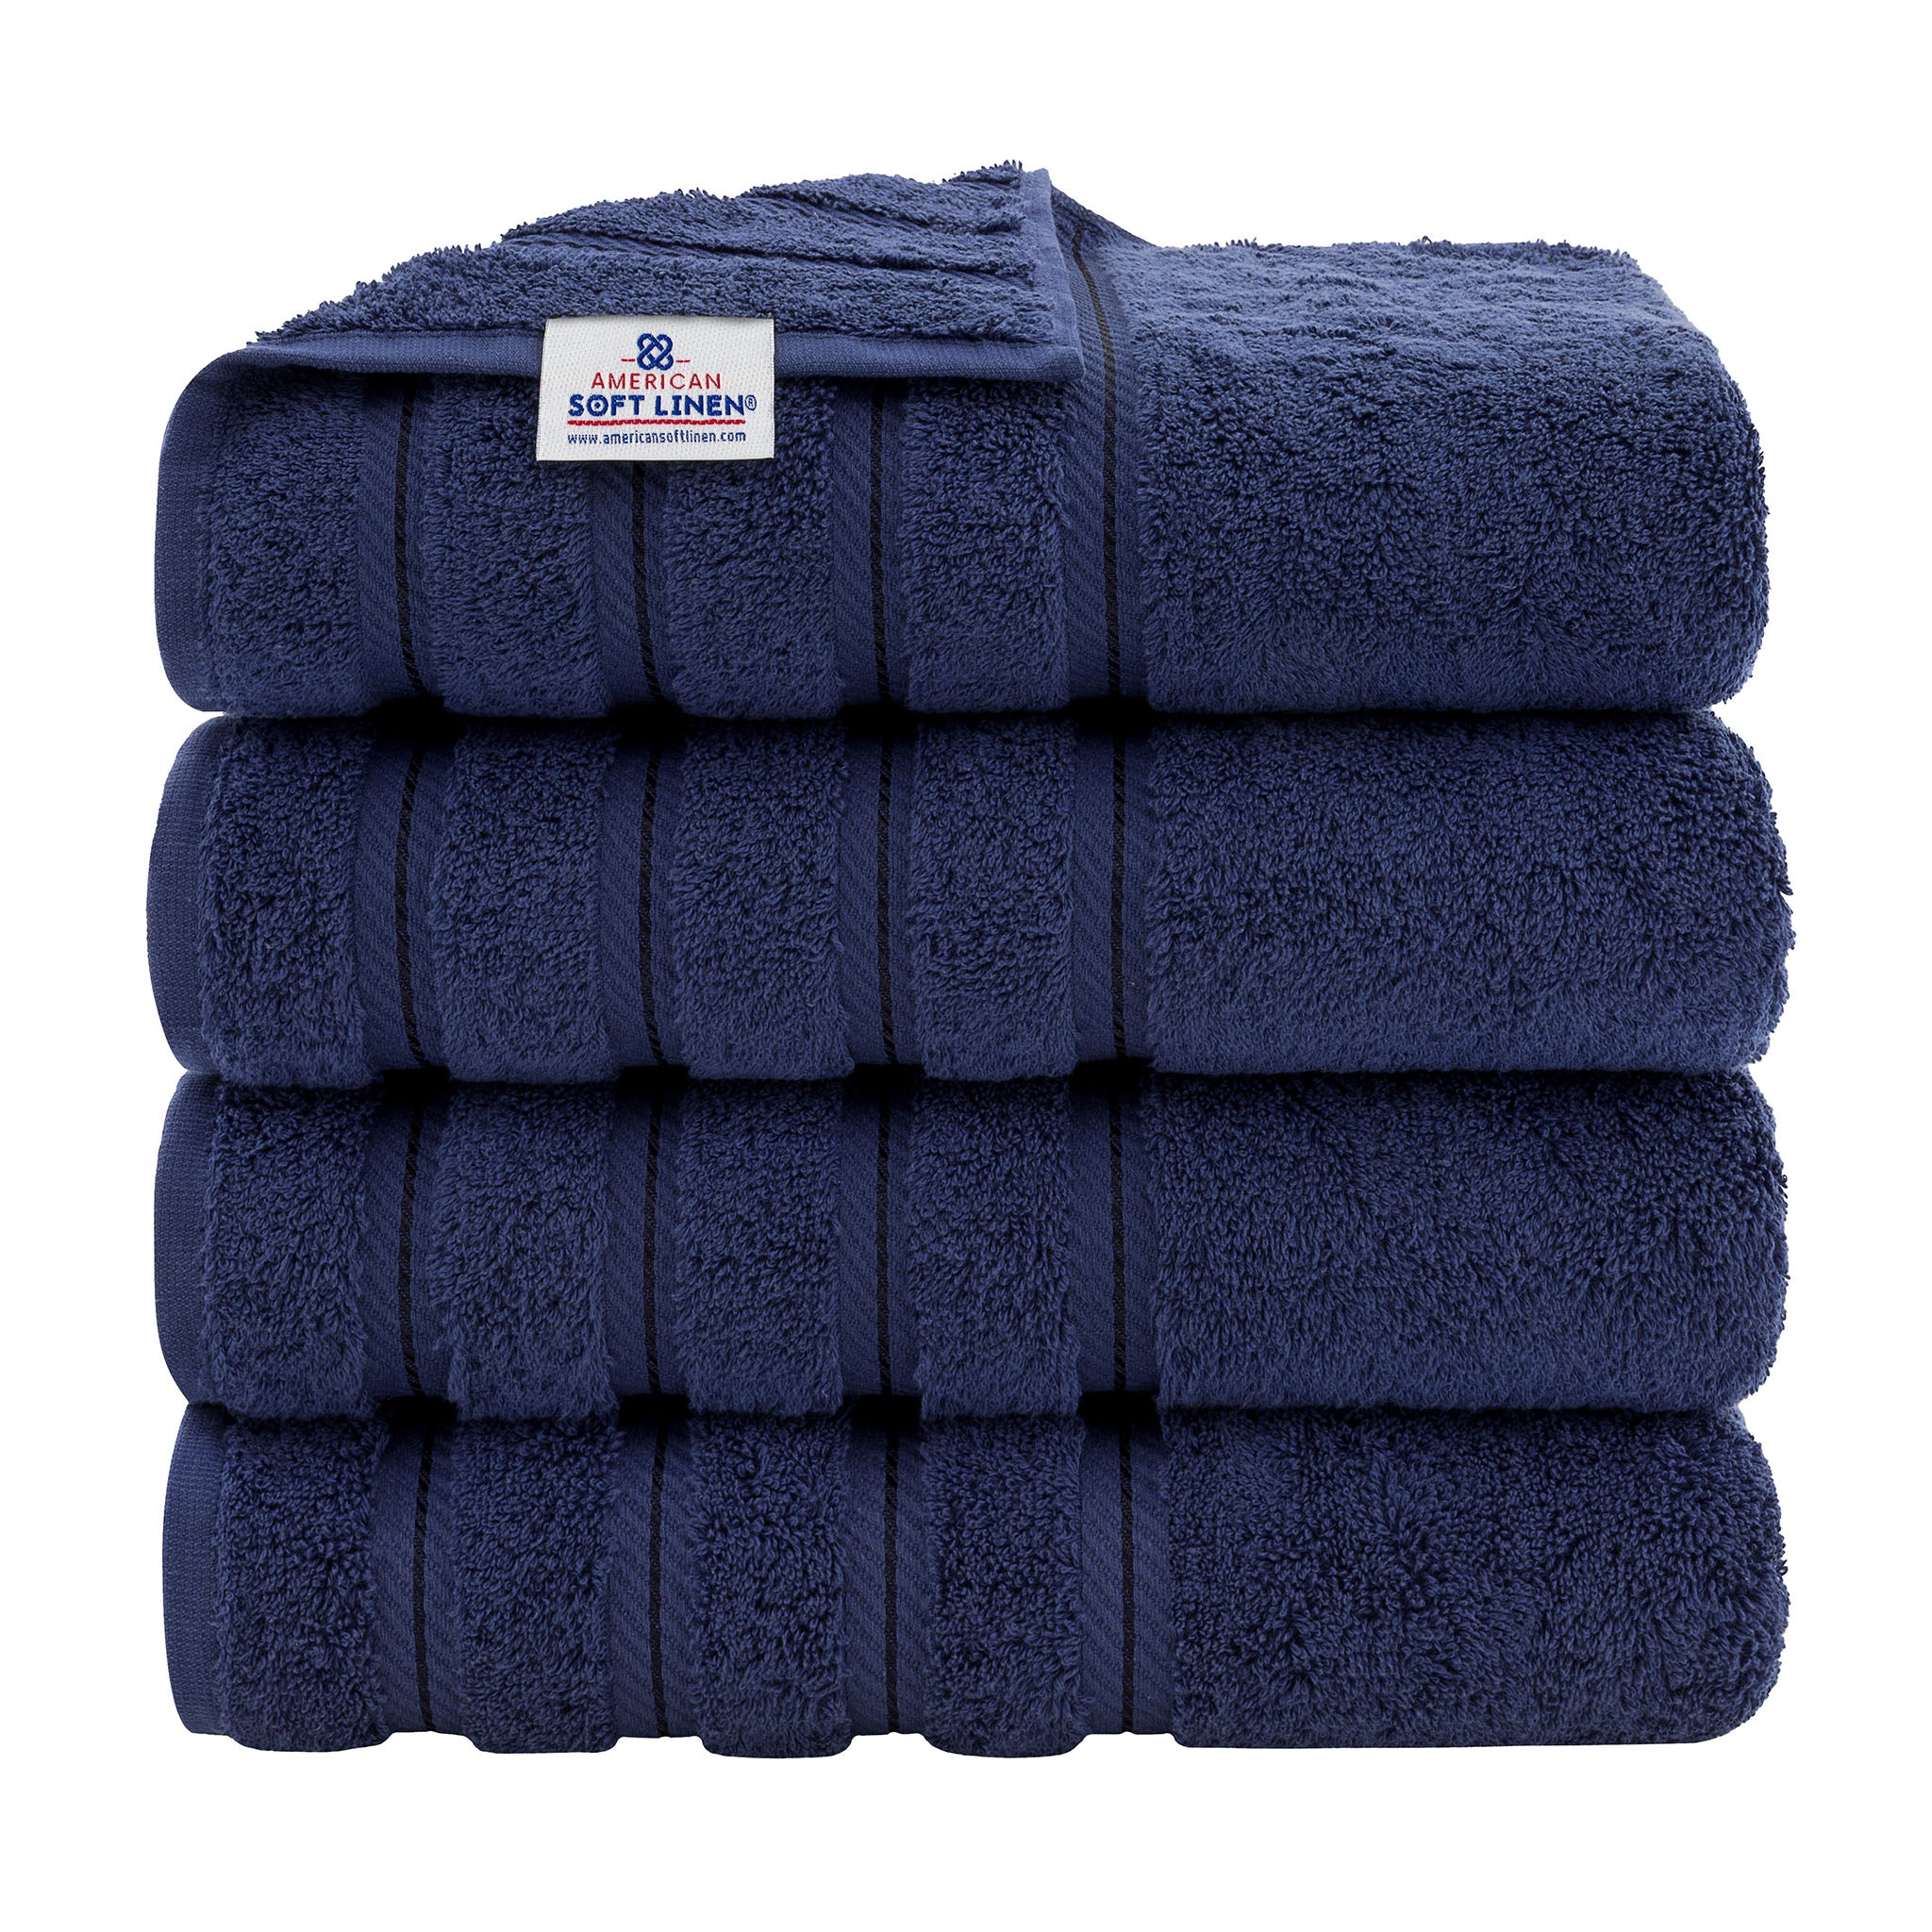 American Soft Linen 100% Turkish Cotton 4 Pack Bath Towel Set Wholesale  navy-blue-1